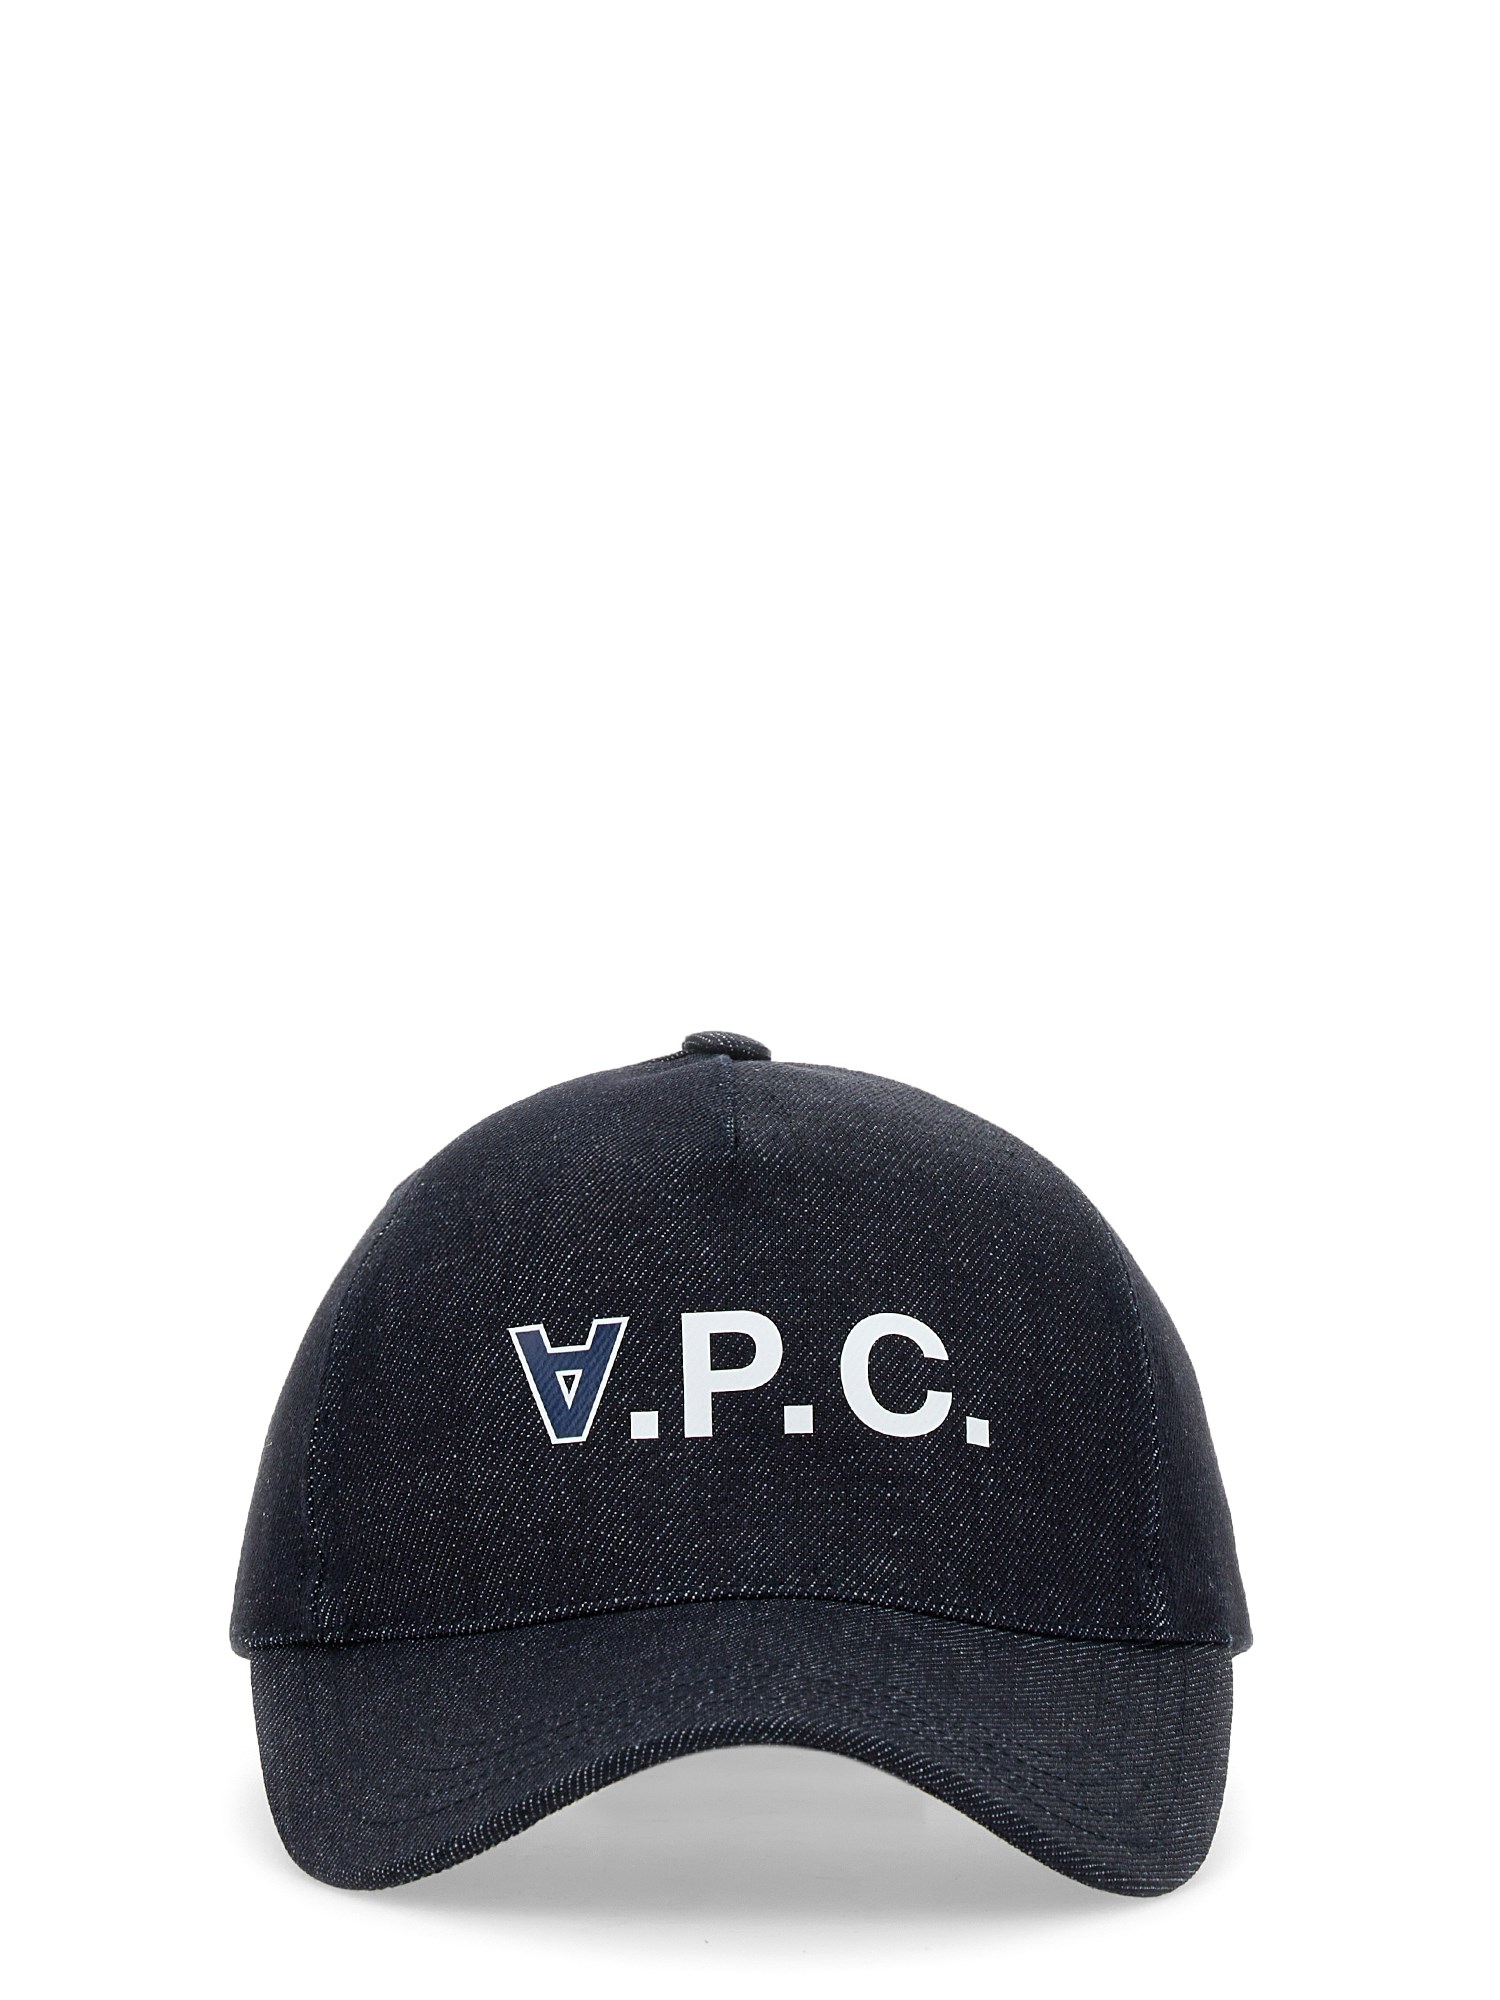 a.p.c. baseball cap